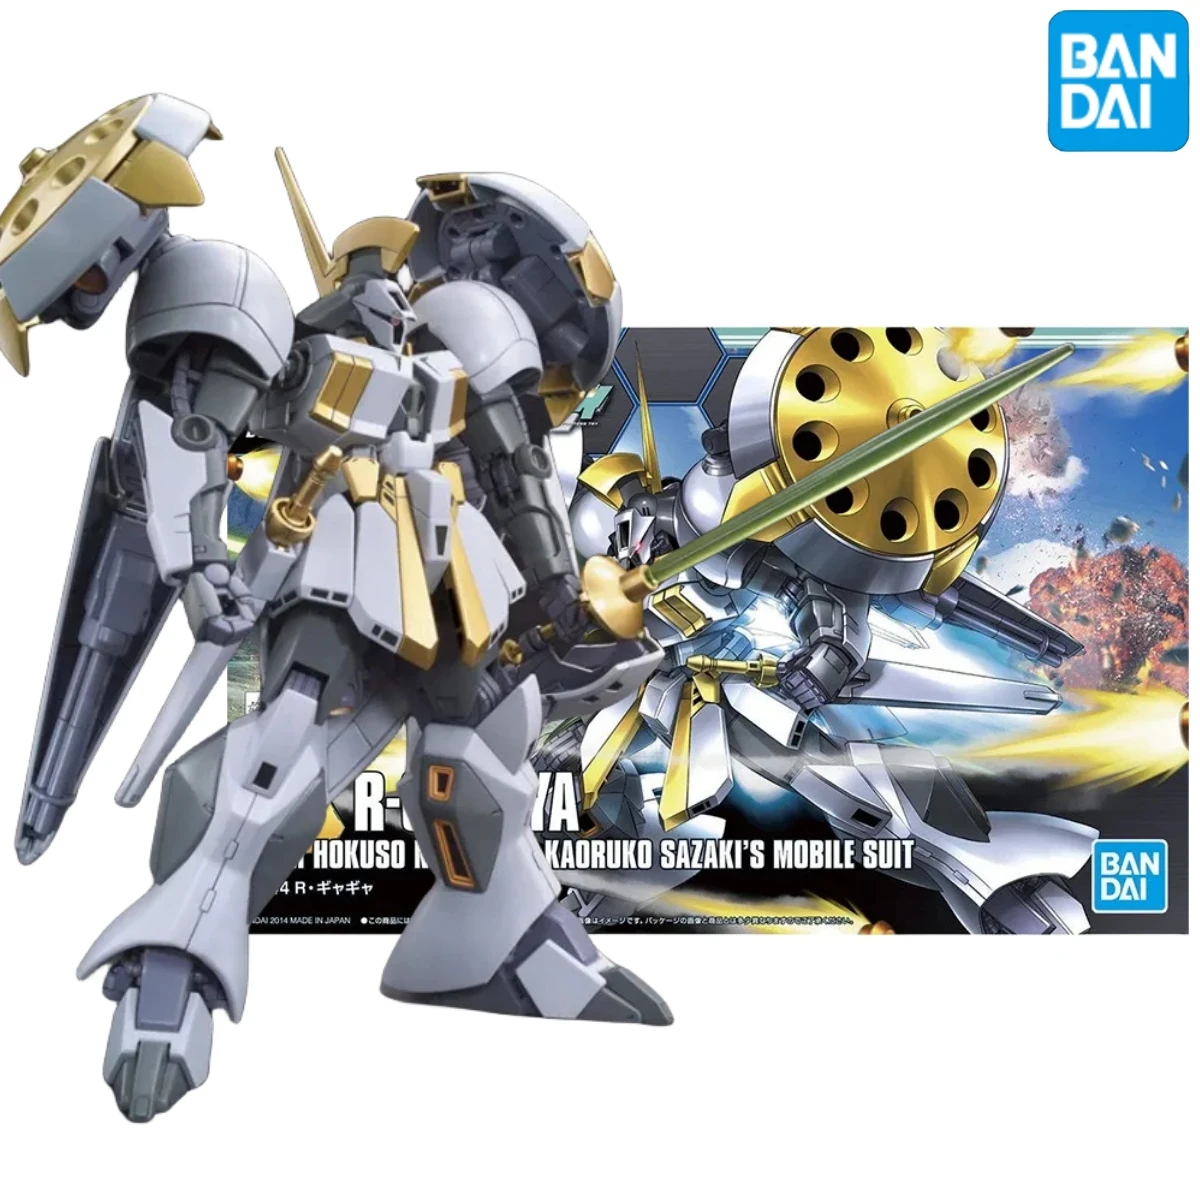 

Bandai Аниме Gundam оригинальная Подлинная R-Gyagya Hgbf 1/144 Сборная модель игрушки экшн-фигурка подарки коллекционные украшения для мальчиков детей